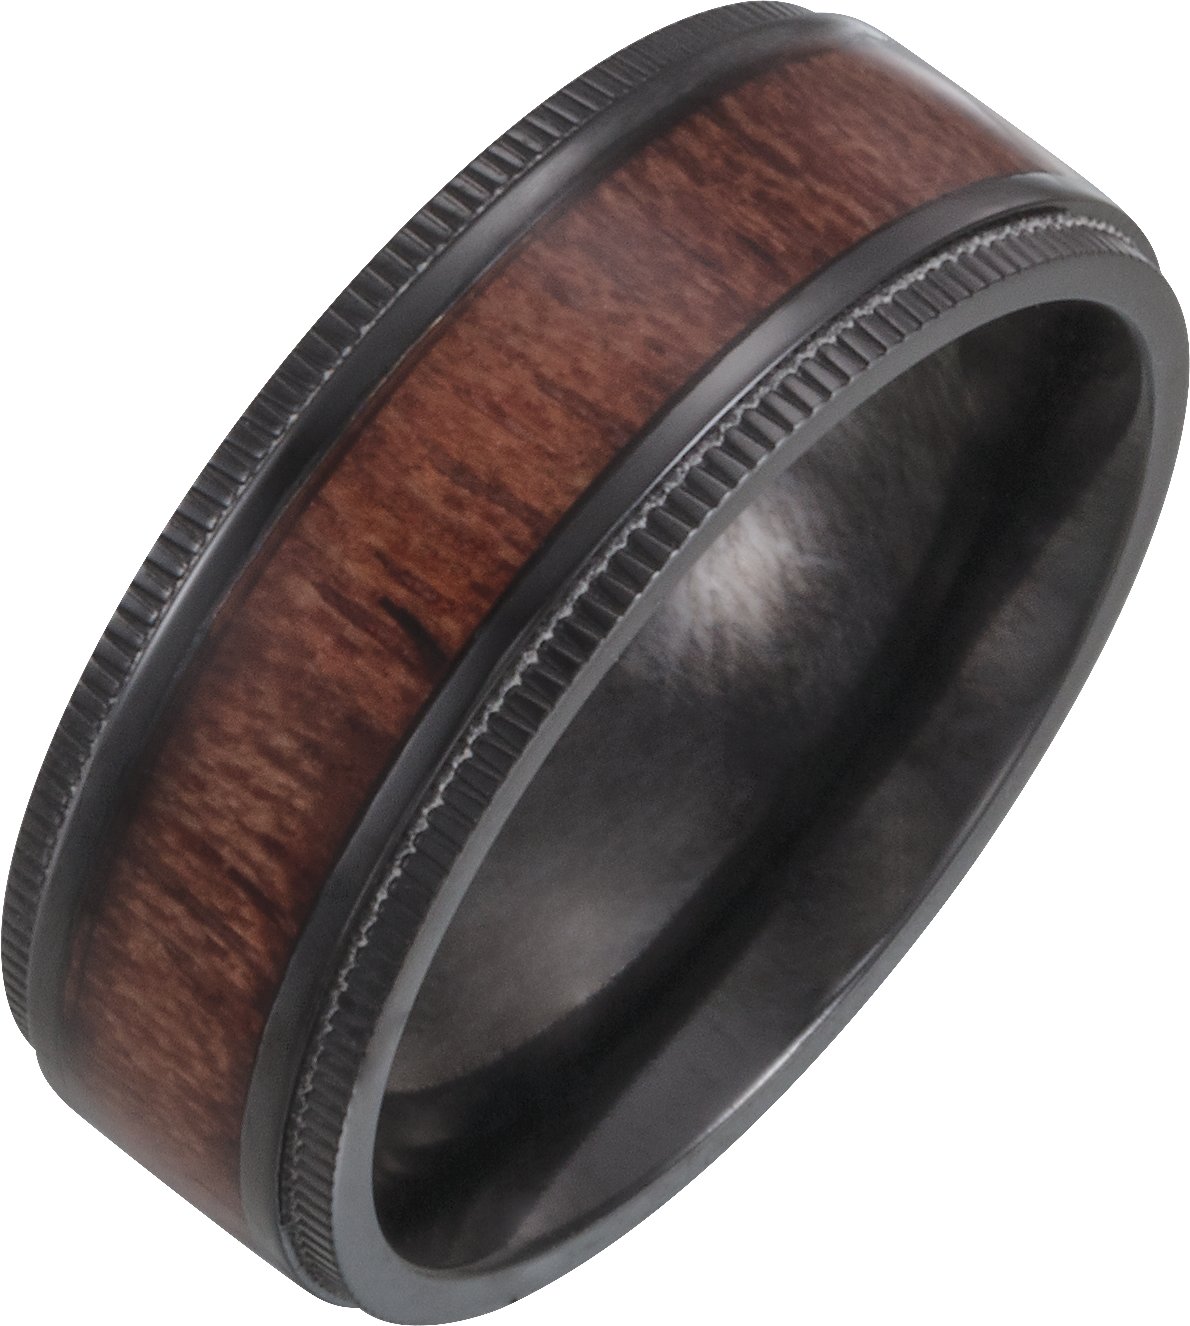 Black Titanium 8 mm Beveled-Edge Band with Wood Inlay Size 10.5